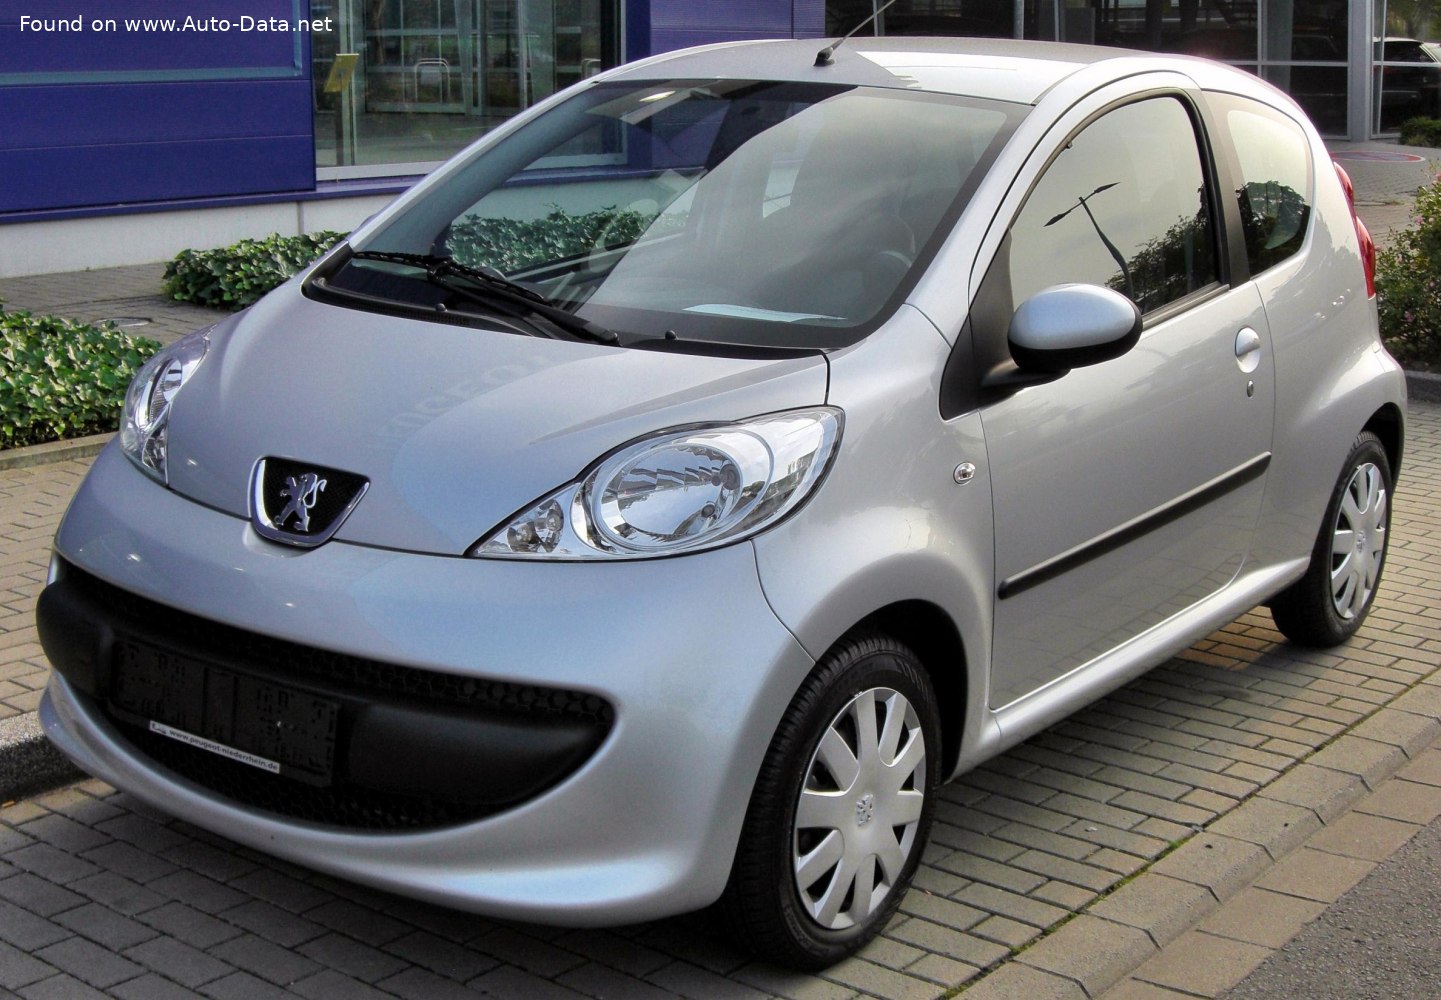 https://www.auto-data.net/images/f104/Peugeot-107-Phase-I-2005-3-door.jpg